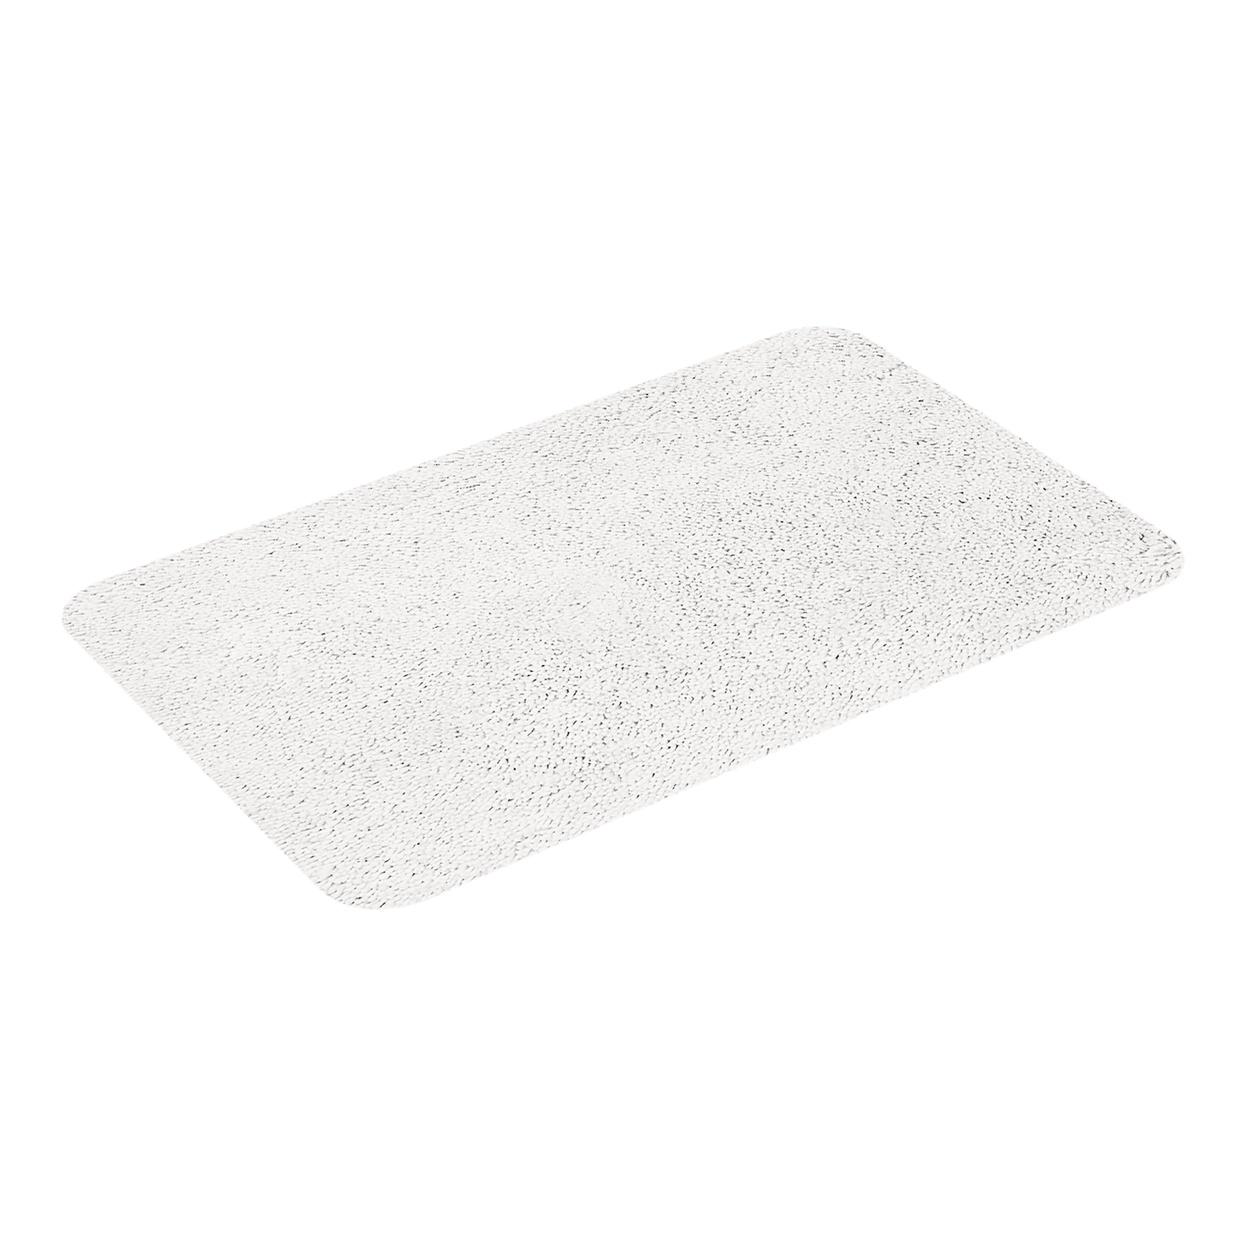 Коврик для ванной Highland белый, 70 x 120 см (Spirella 1013062)